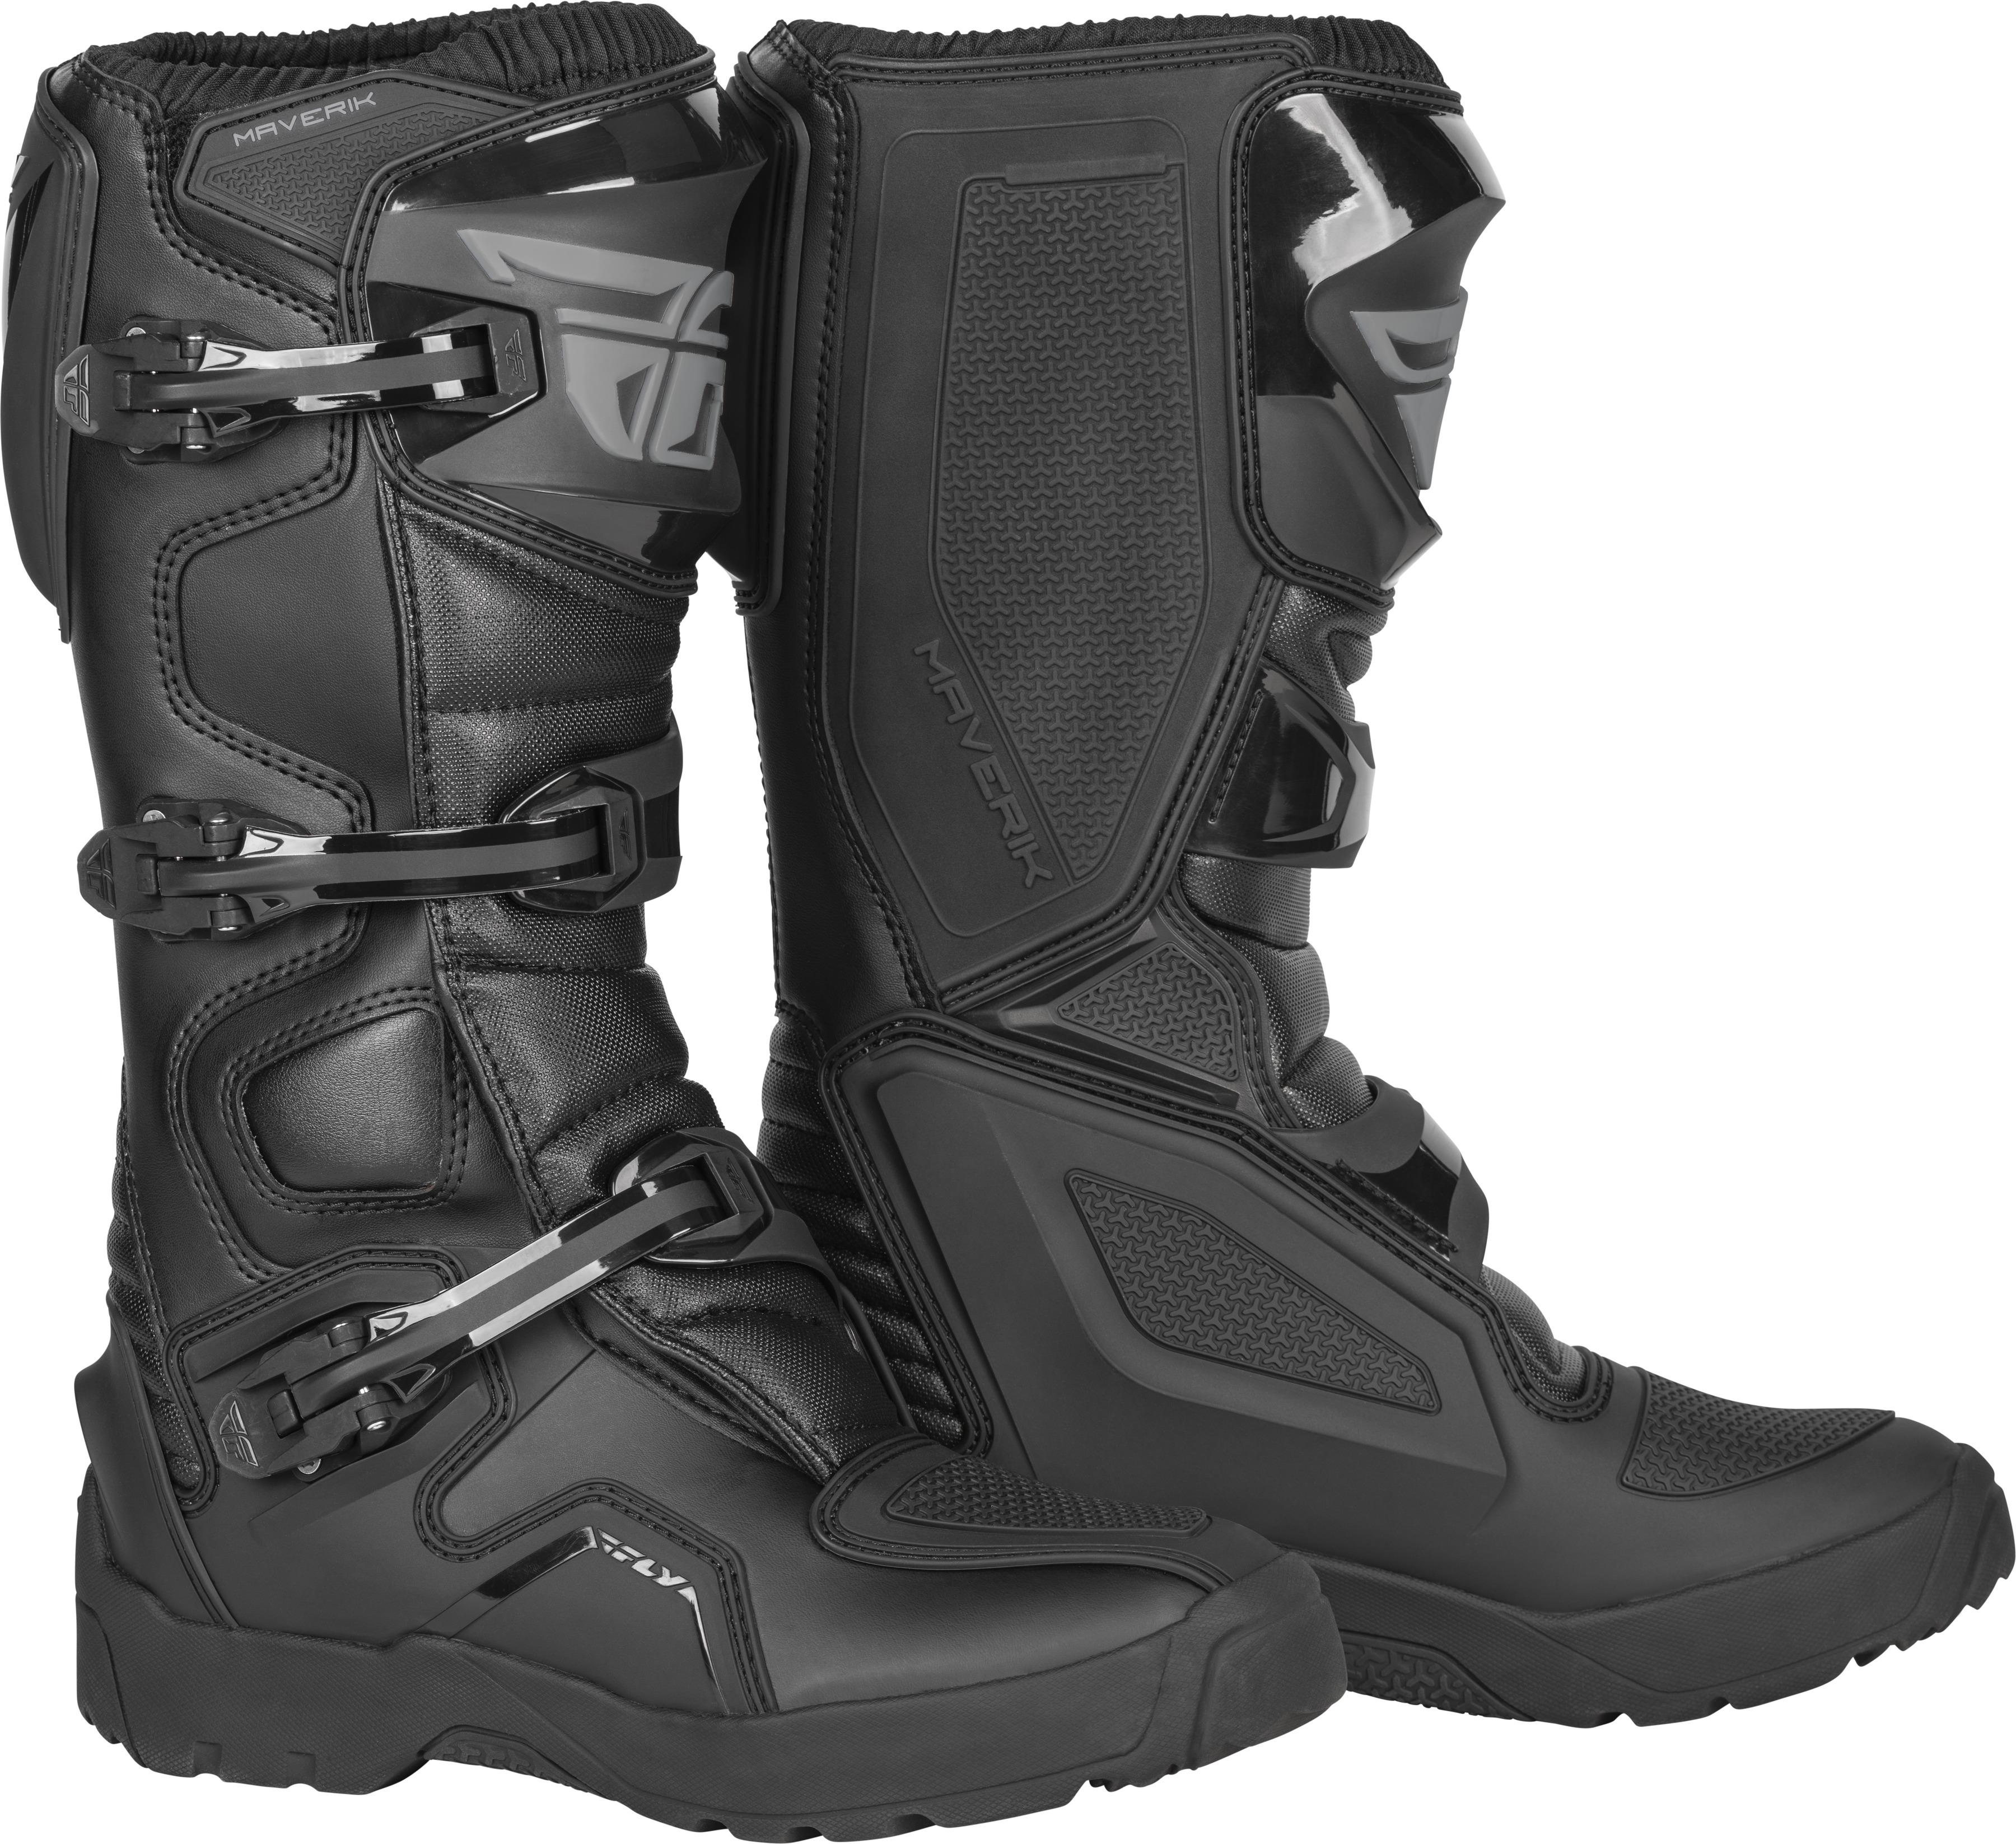 Maverik Enduro Boot Black Size 9 - Click Image to Close